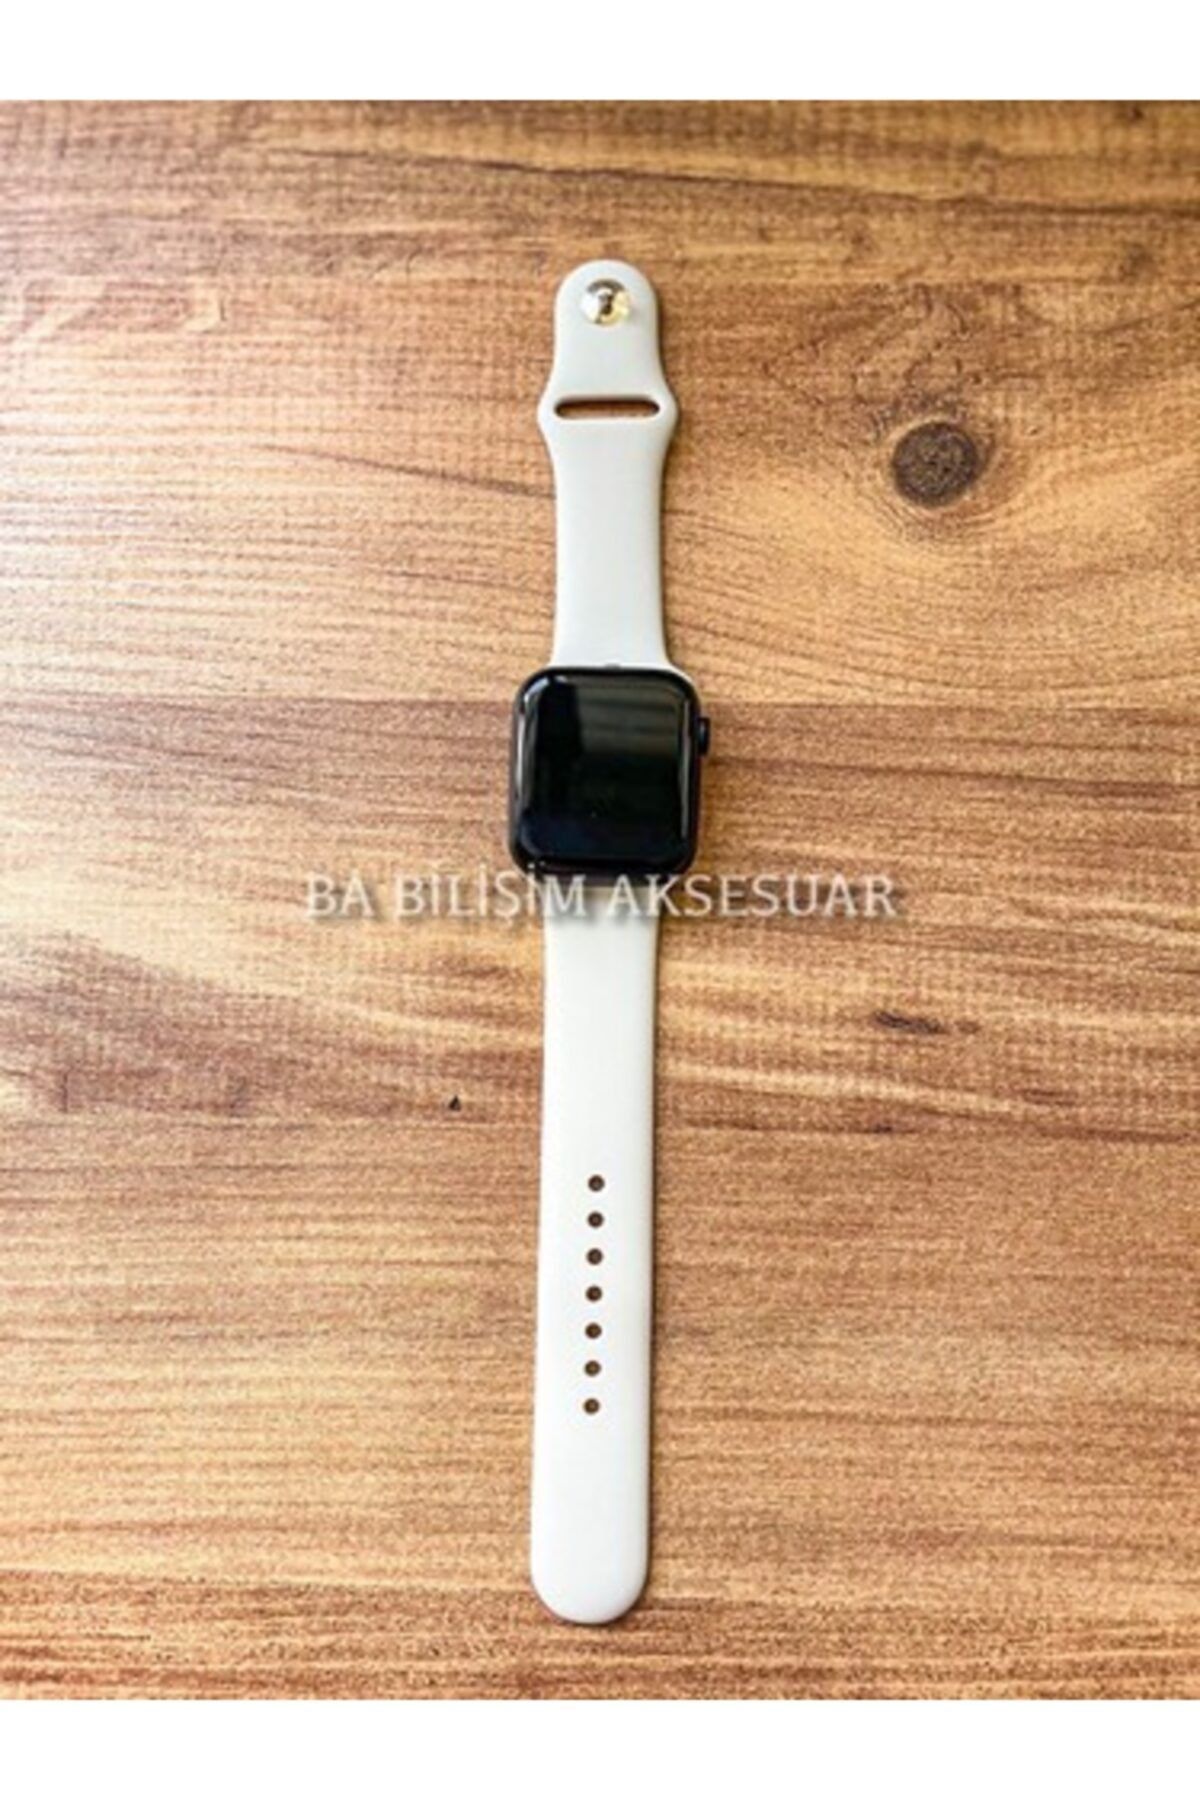 Bilişim Aksesuar Apple Watch 1 2 3 4 5 6 Se 38 - 40 Mm Spor Kordon Silikon Kayış Krem S/m Beden